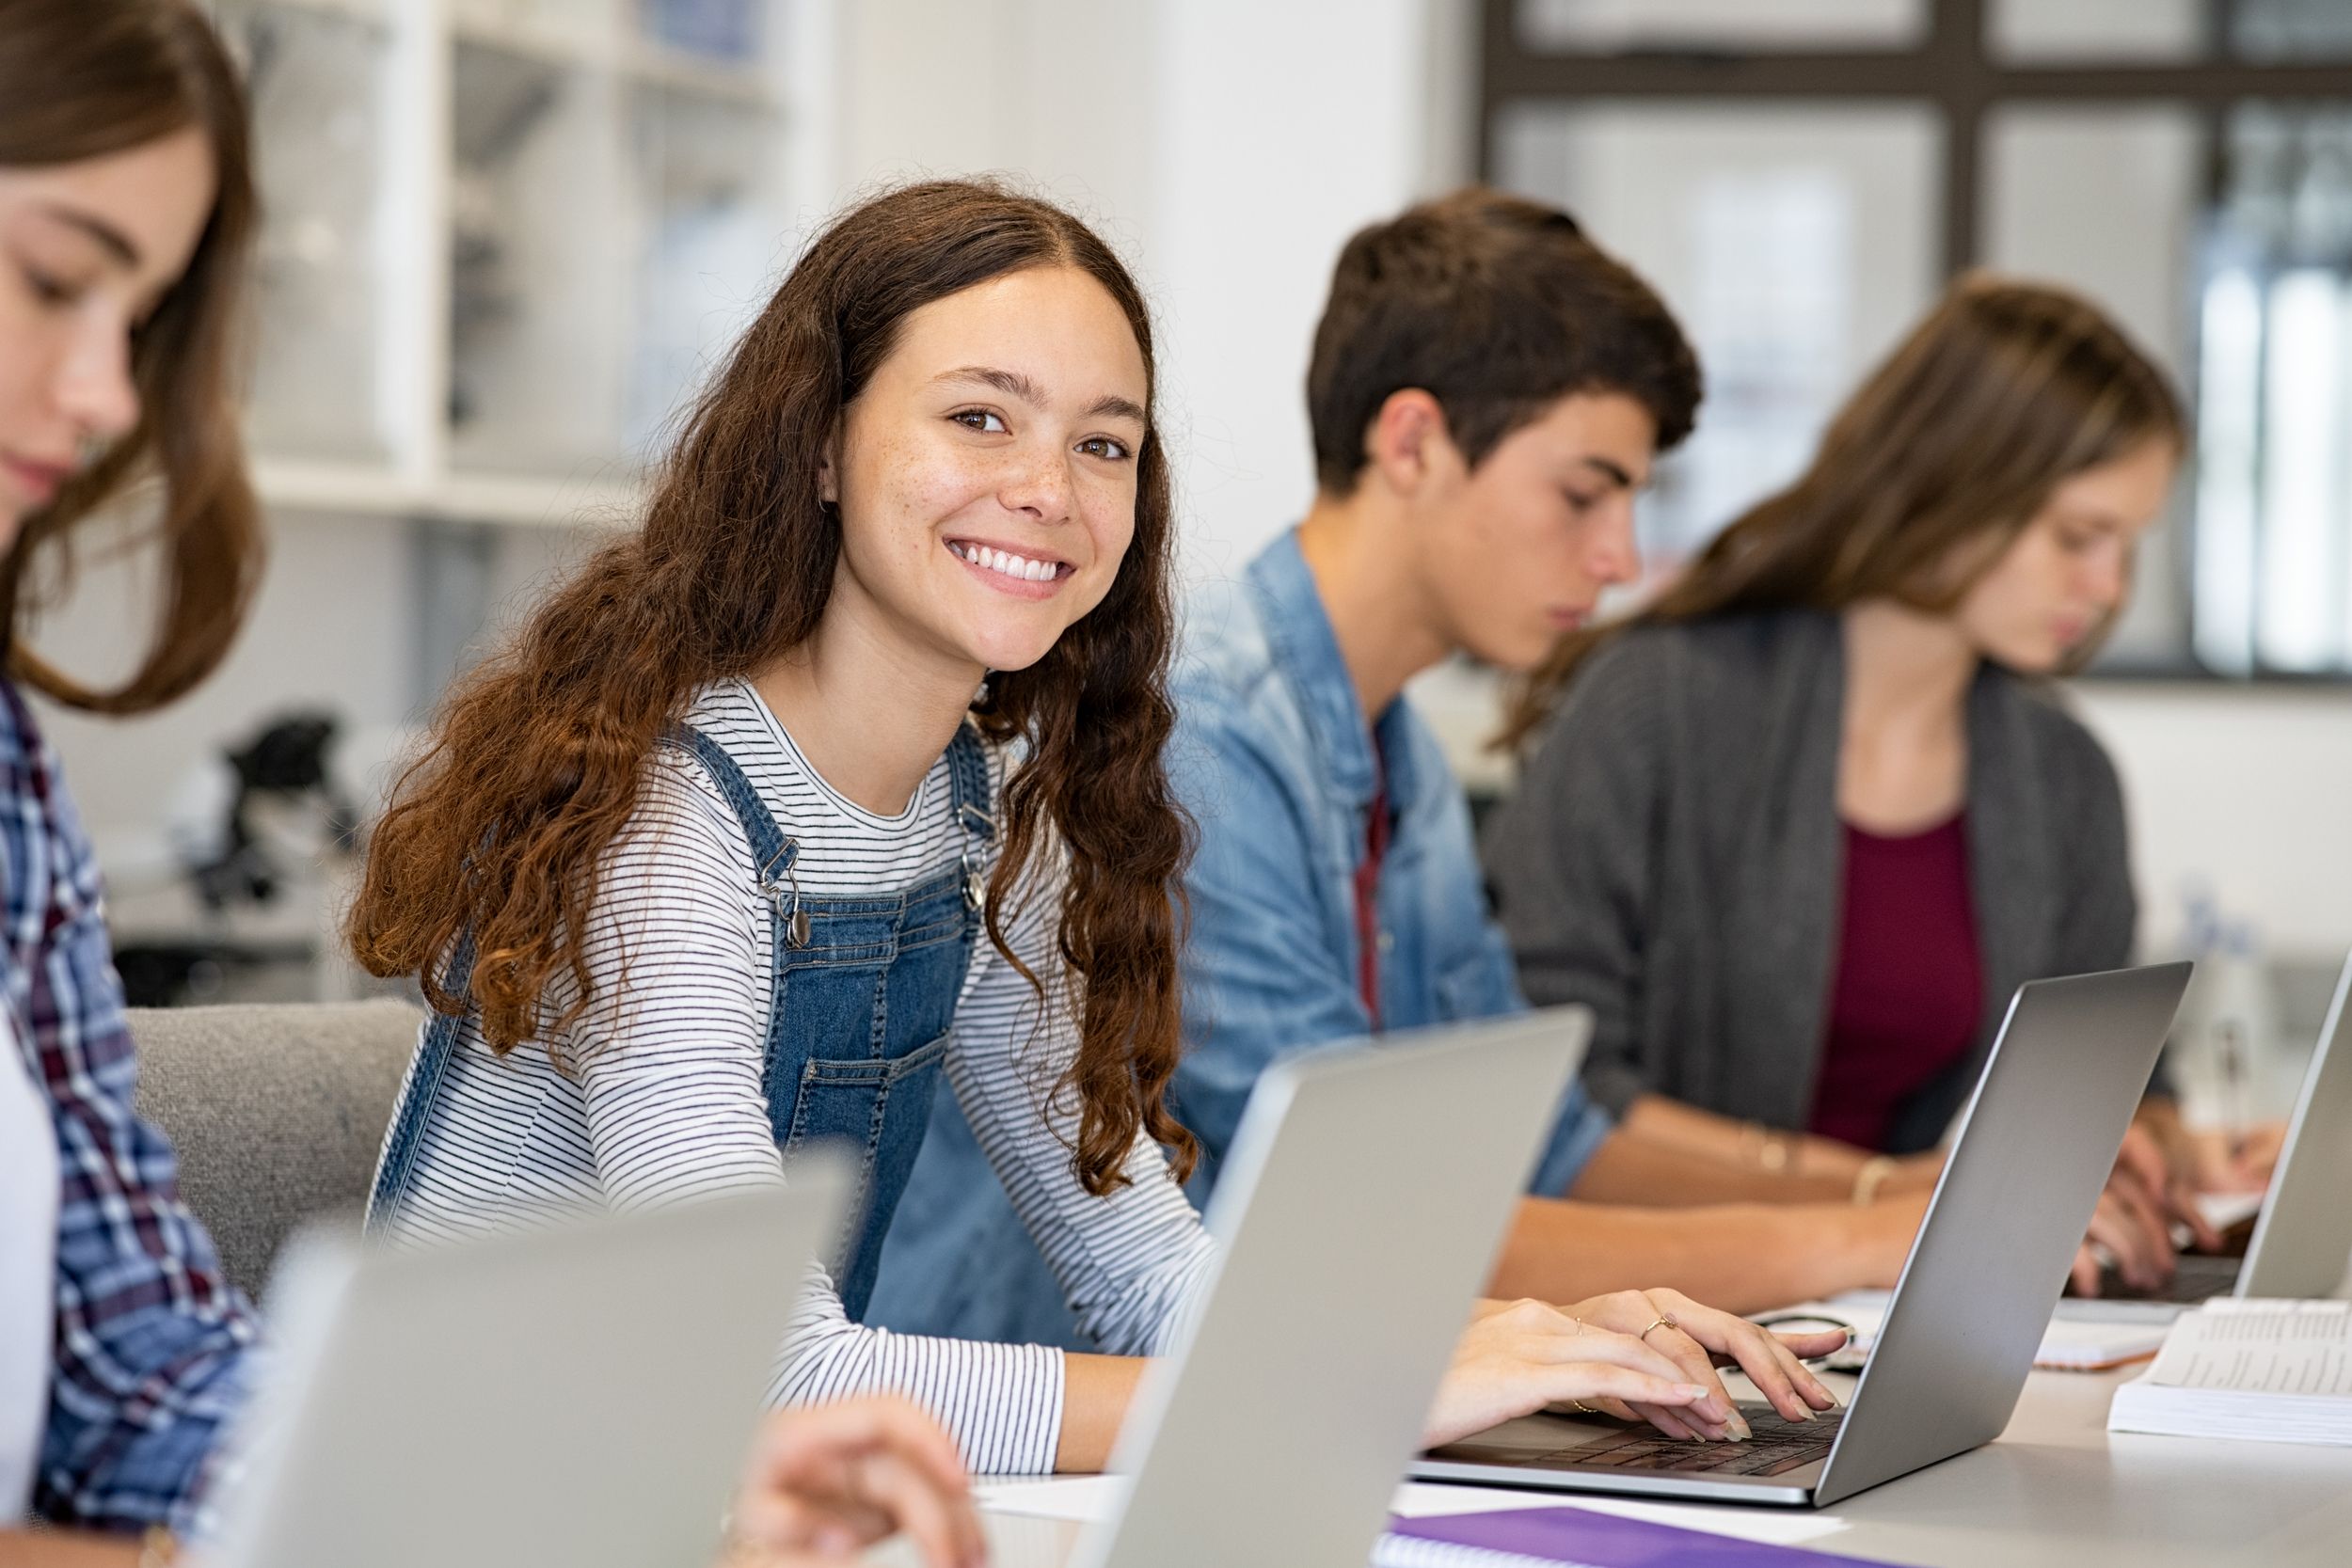 Schüler sitzen in der Schule am Laptop und ein Mädchen lächelt in die Kamera